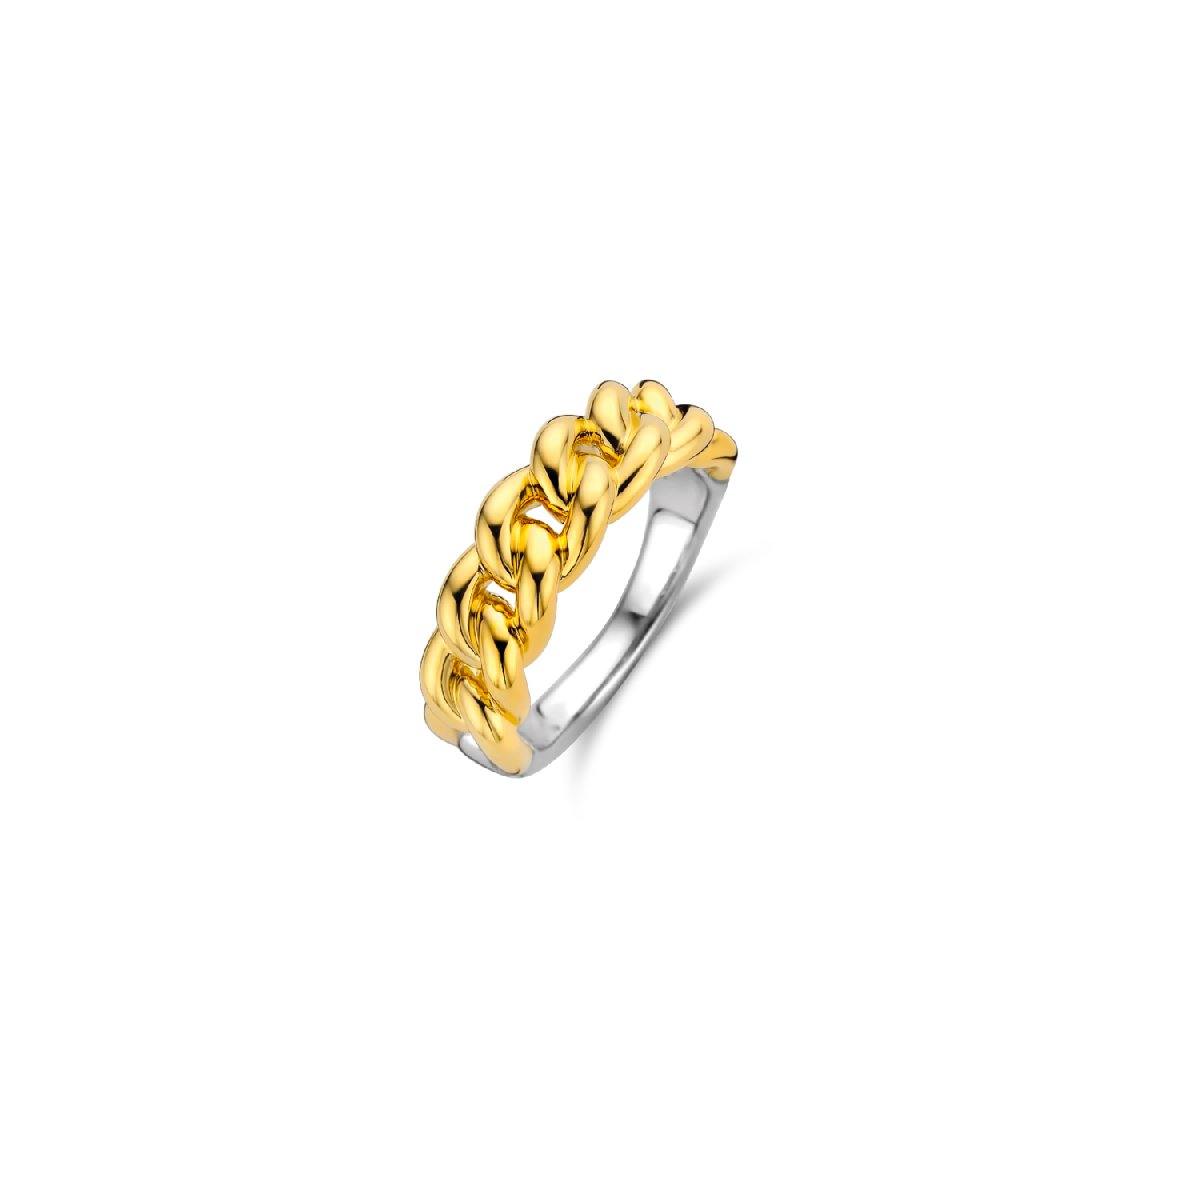 Le maglie intrecciate di questo anello d'argento TI SENTO - Milano sono placcate in oro giallo. Un gioiello originale, un grande classico di lusso.